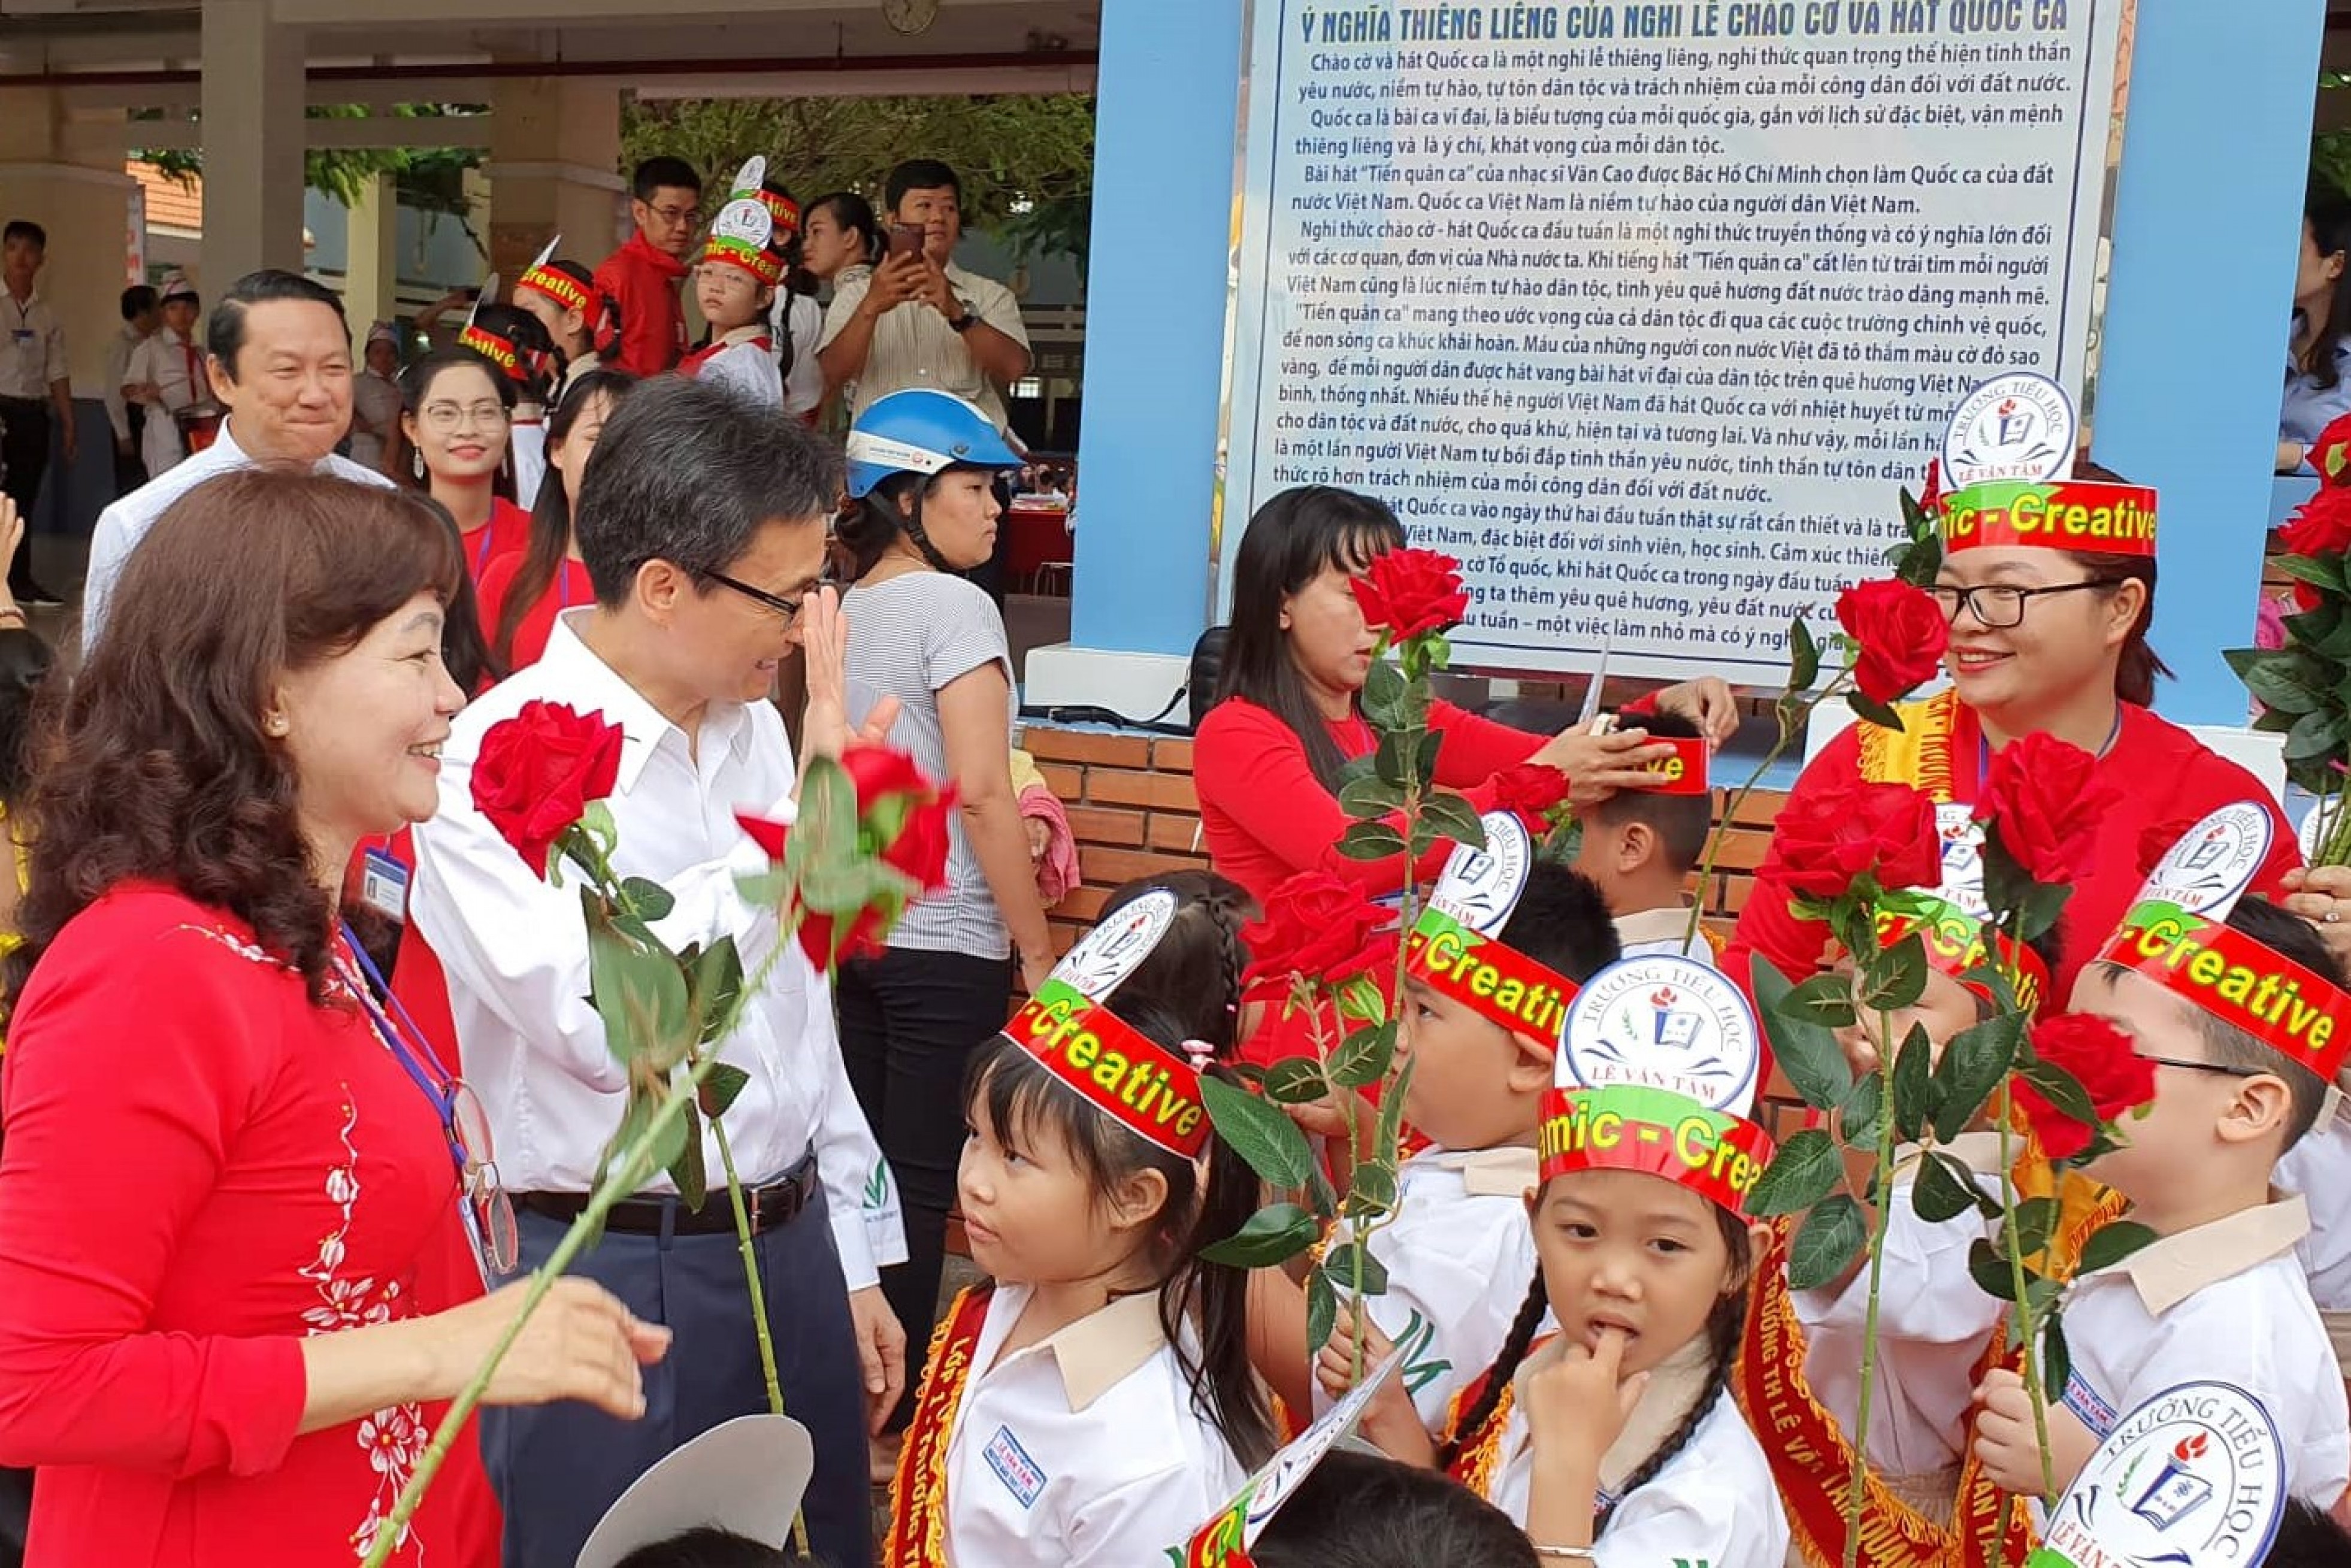 Năm nay, trường Tiểu học Lê Văn Tám (TP.HCM) vinh dự được đón Phó Thủ tướng Vũ Đức Đam đến thăm trường trong lễ khai giảng. Phó Thủ tướng thân thiện, hòa đồng và giản dị bên các em nhỏ